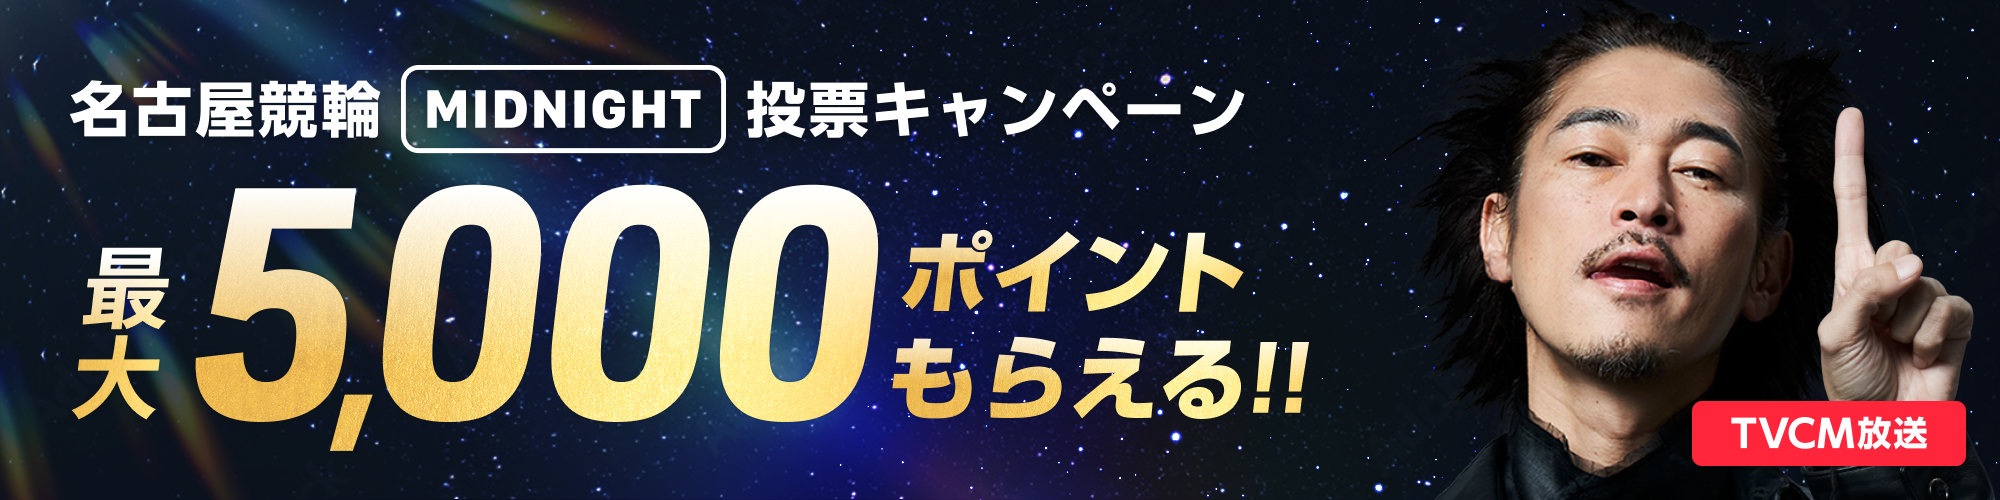 【金シャチ5 in Midnight】名古屋競輪 ミッドナイト 投票キャンペーン